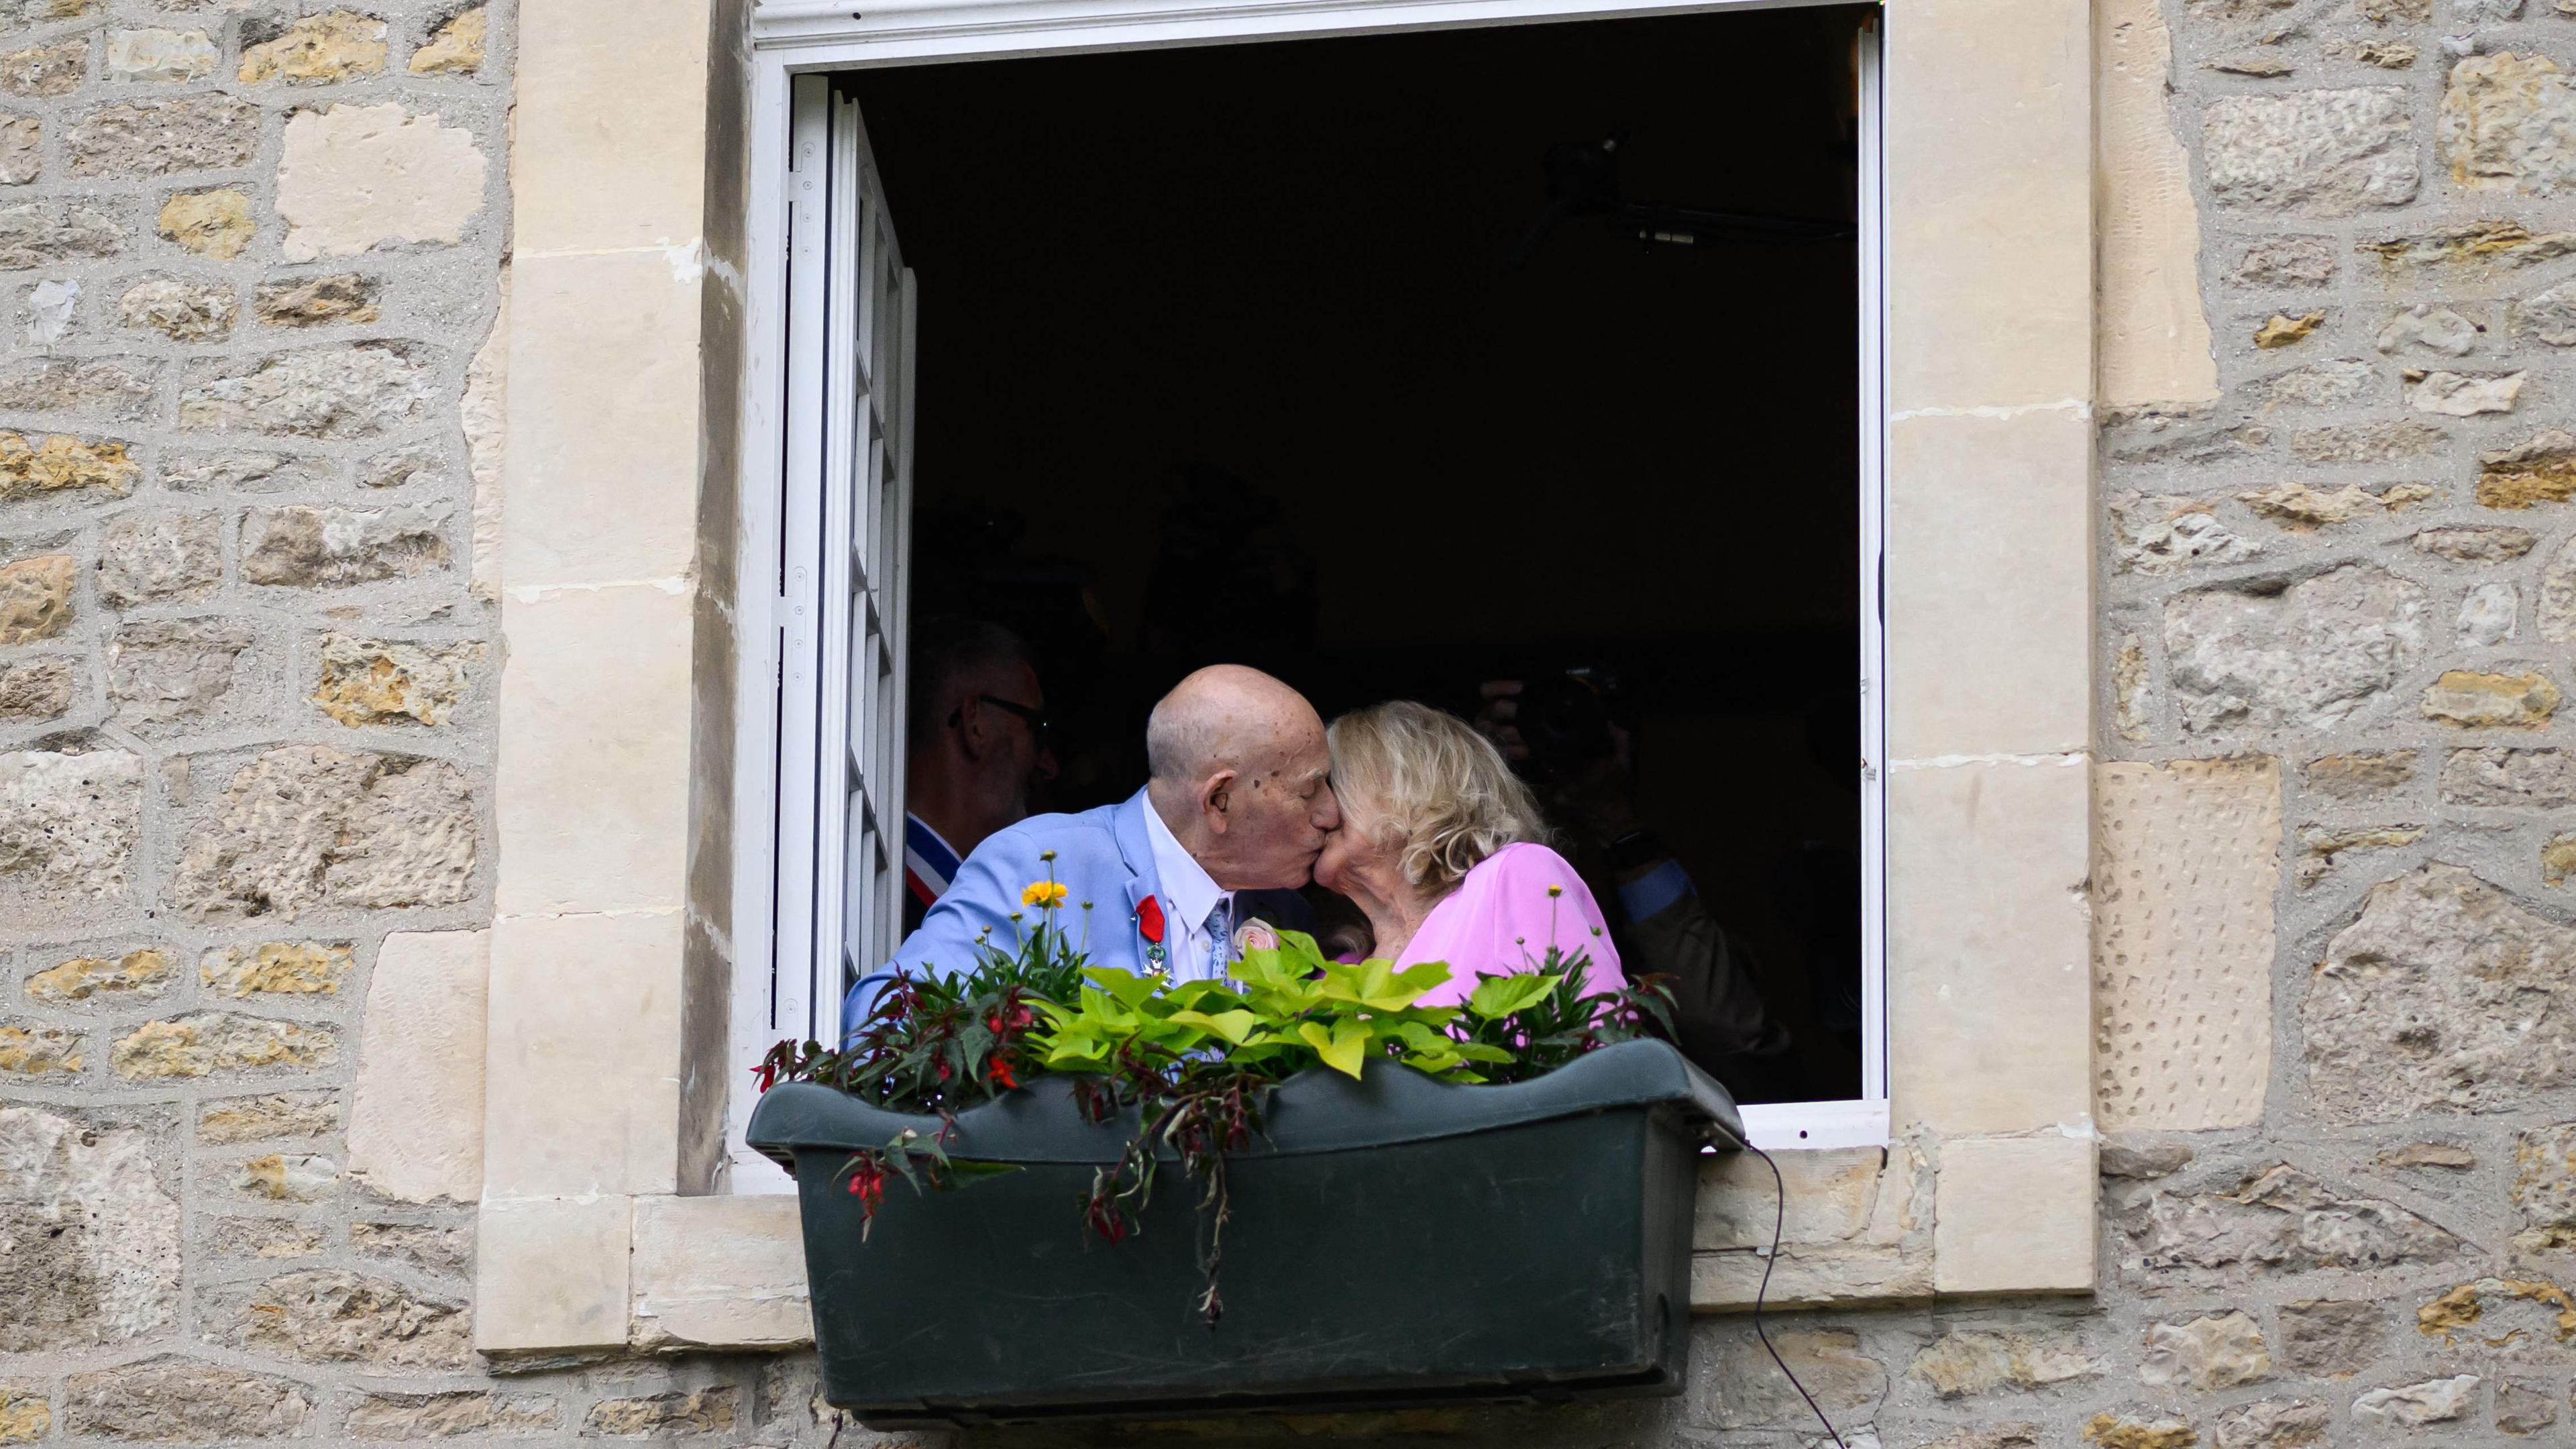 US-Kriegsveteran Terens, 100, links, und Jeanne Swerlin, 96, rechts, küssen sich am Fenster nach ihrer Hochzeit in der Normandie, 80 Jahre nach dem D-Day.